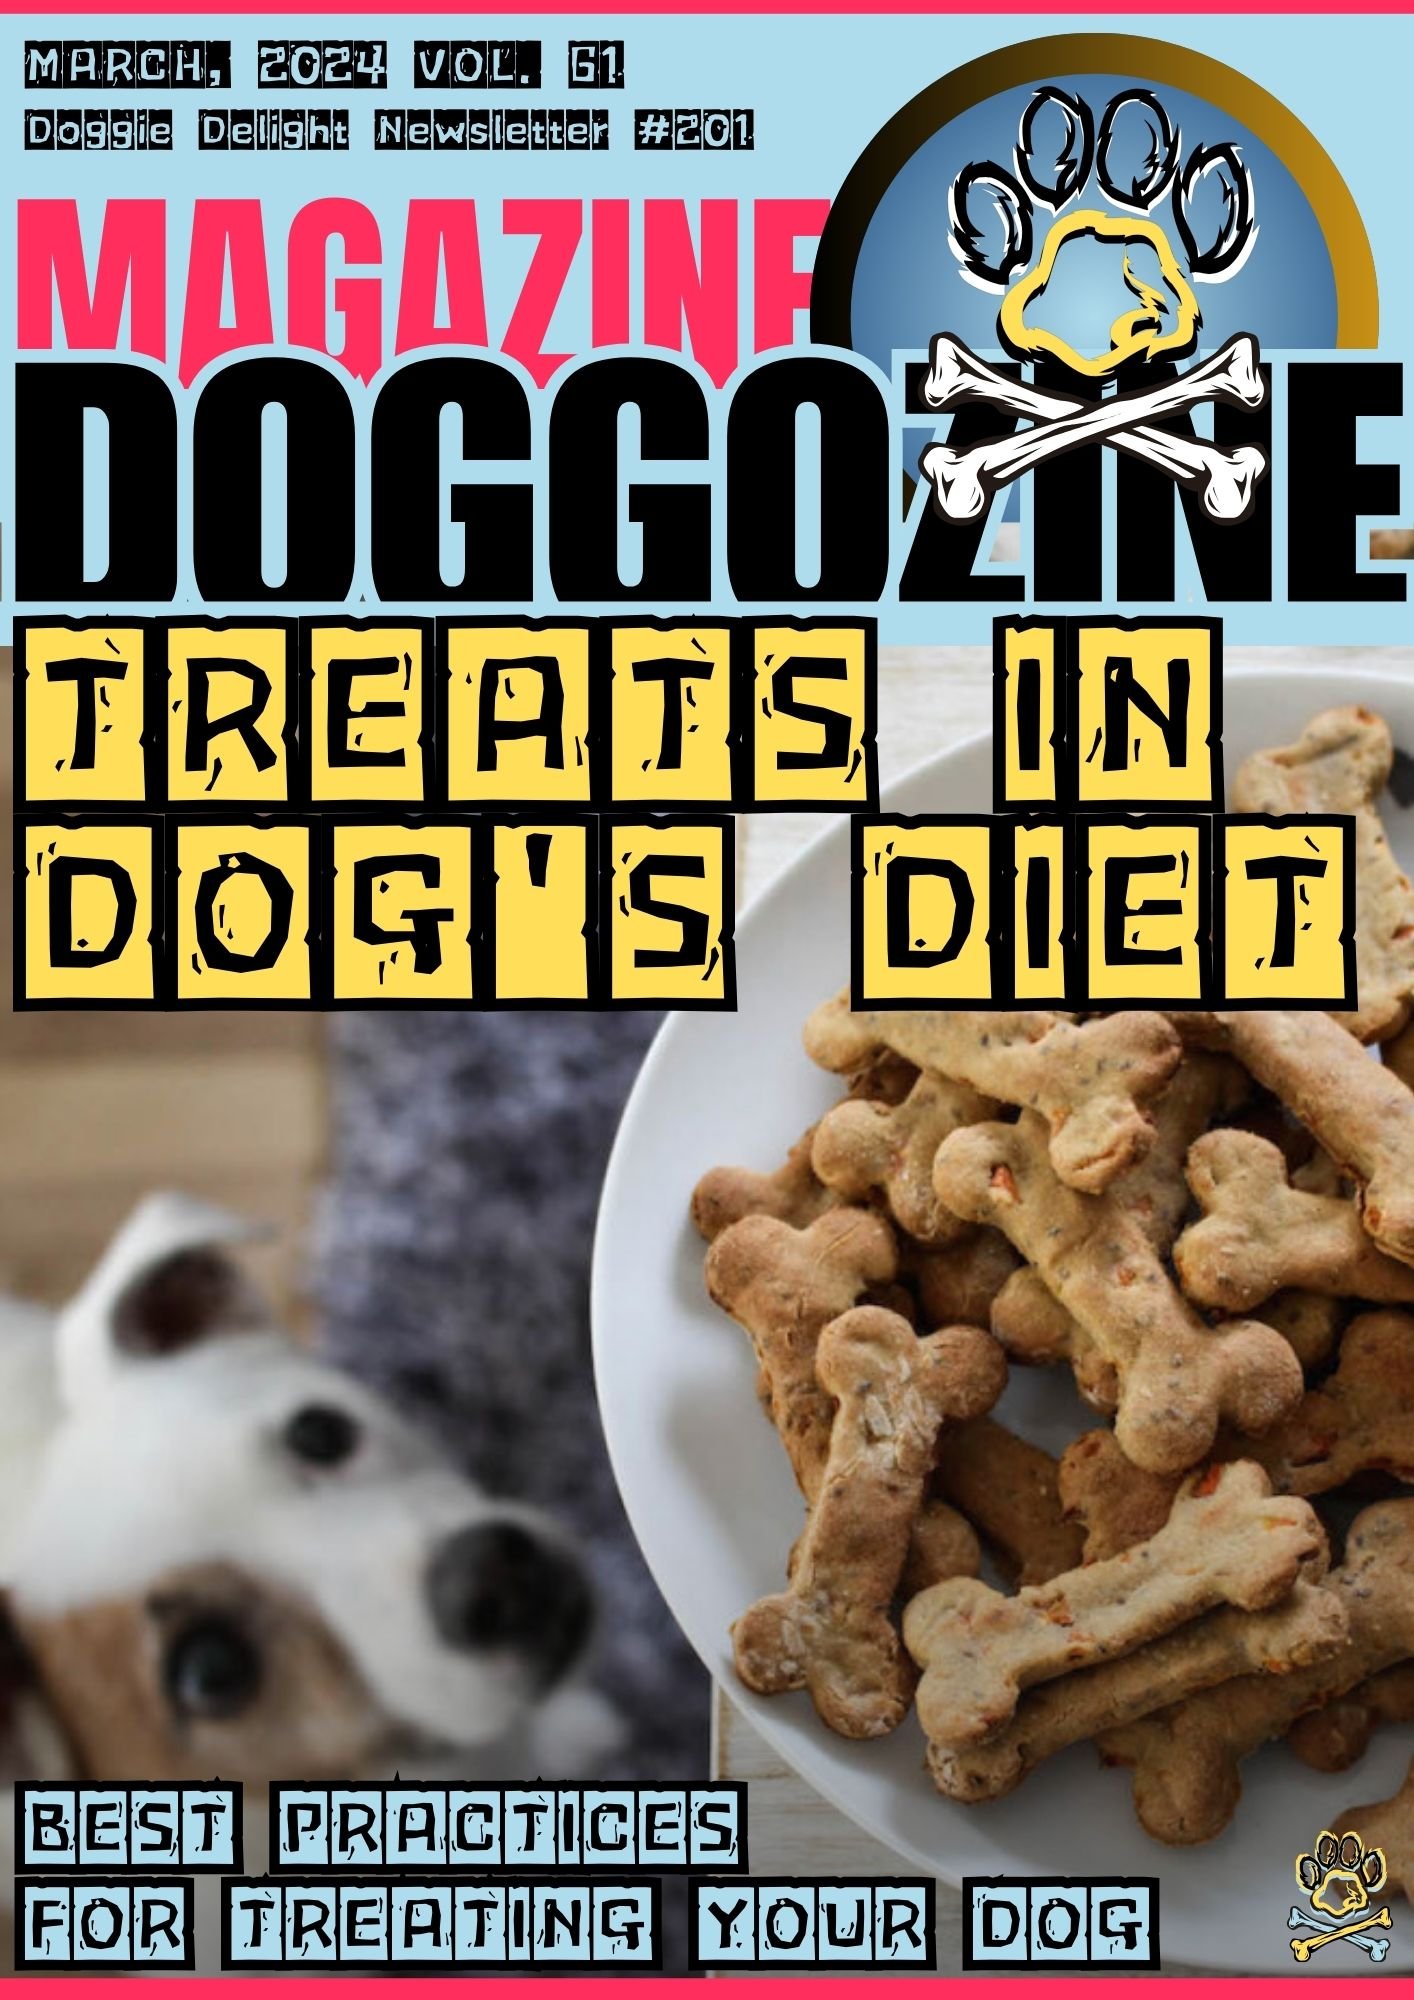 TREATS IN DOG'S DIET